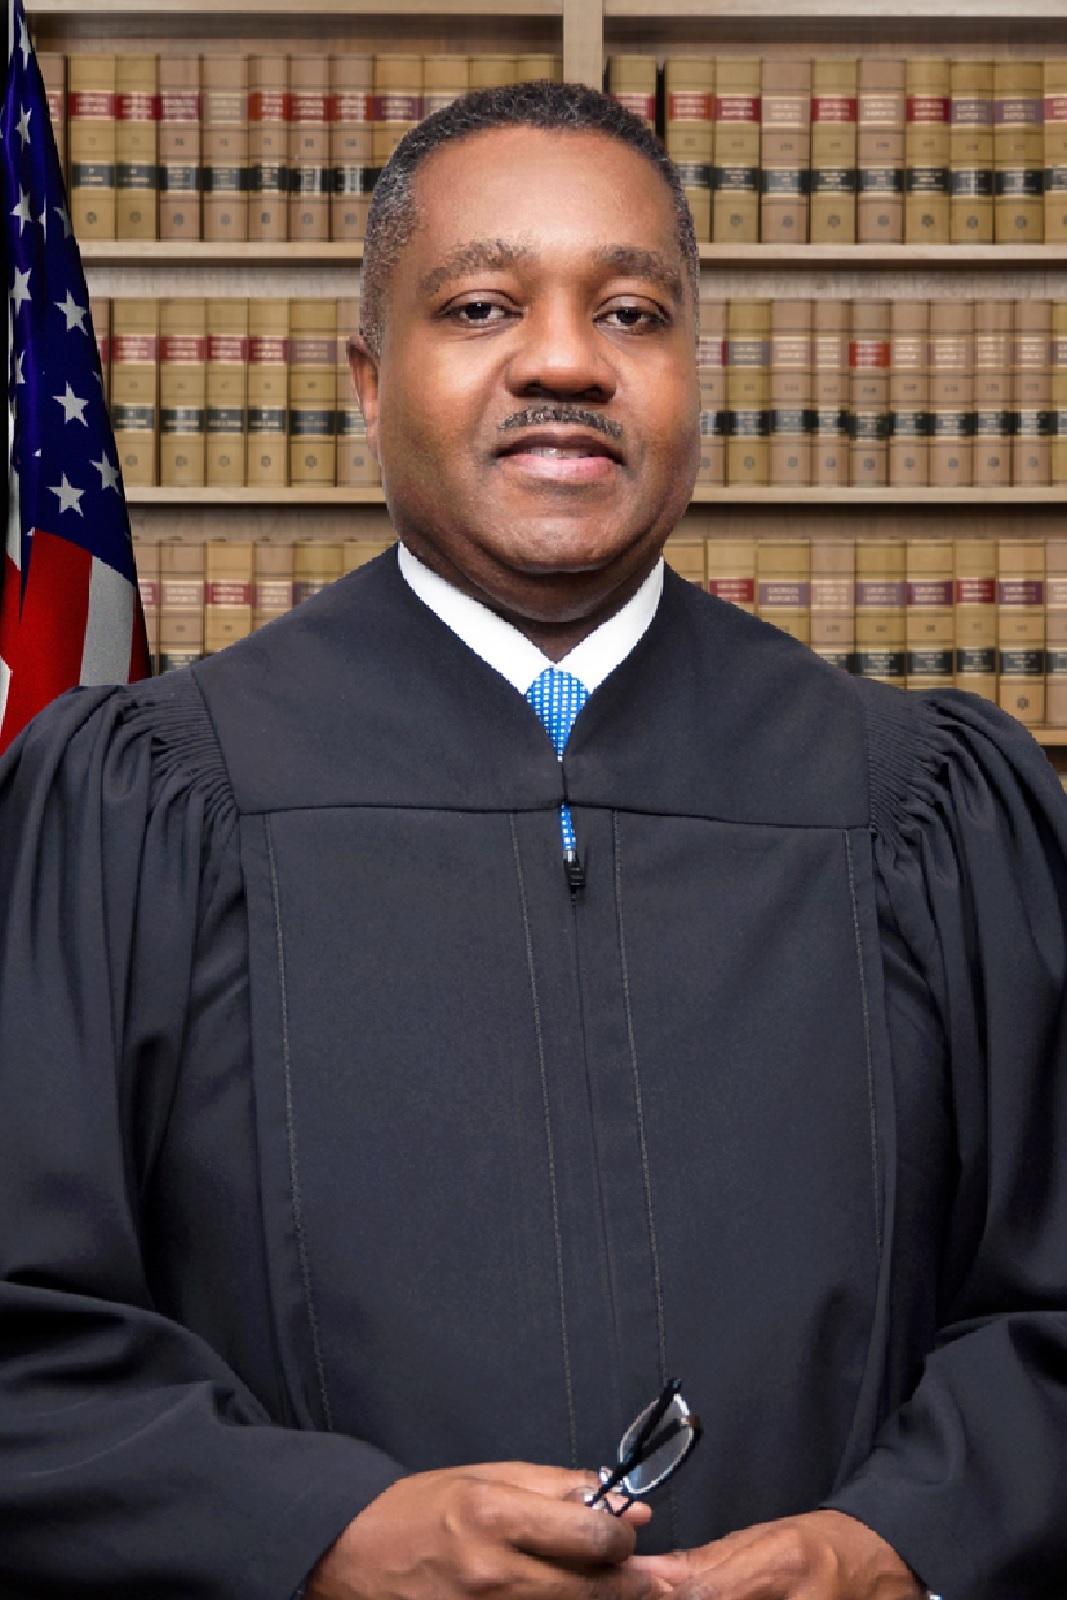 Judge Thomas A. Cox